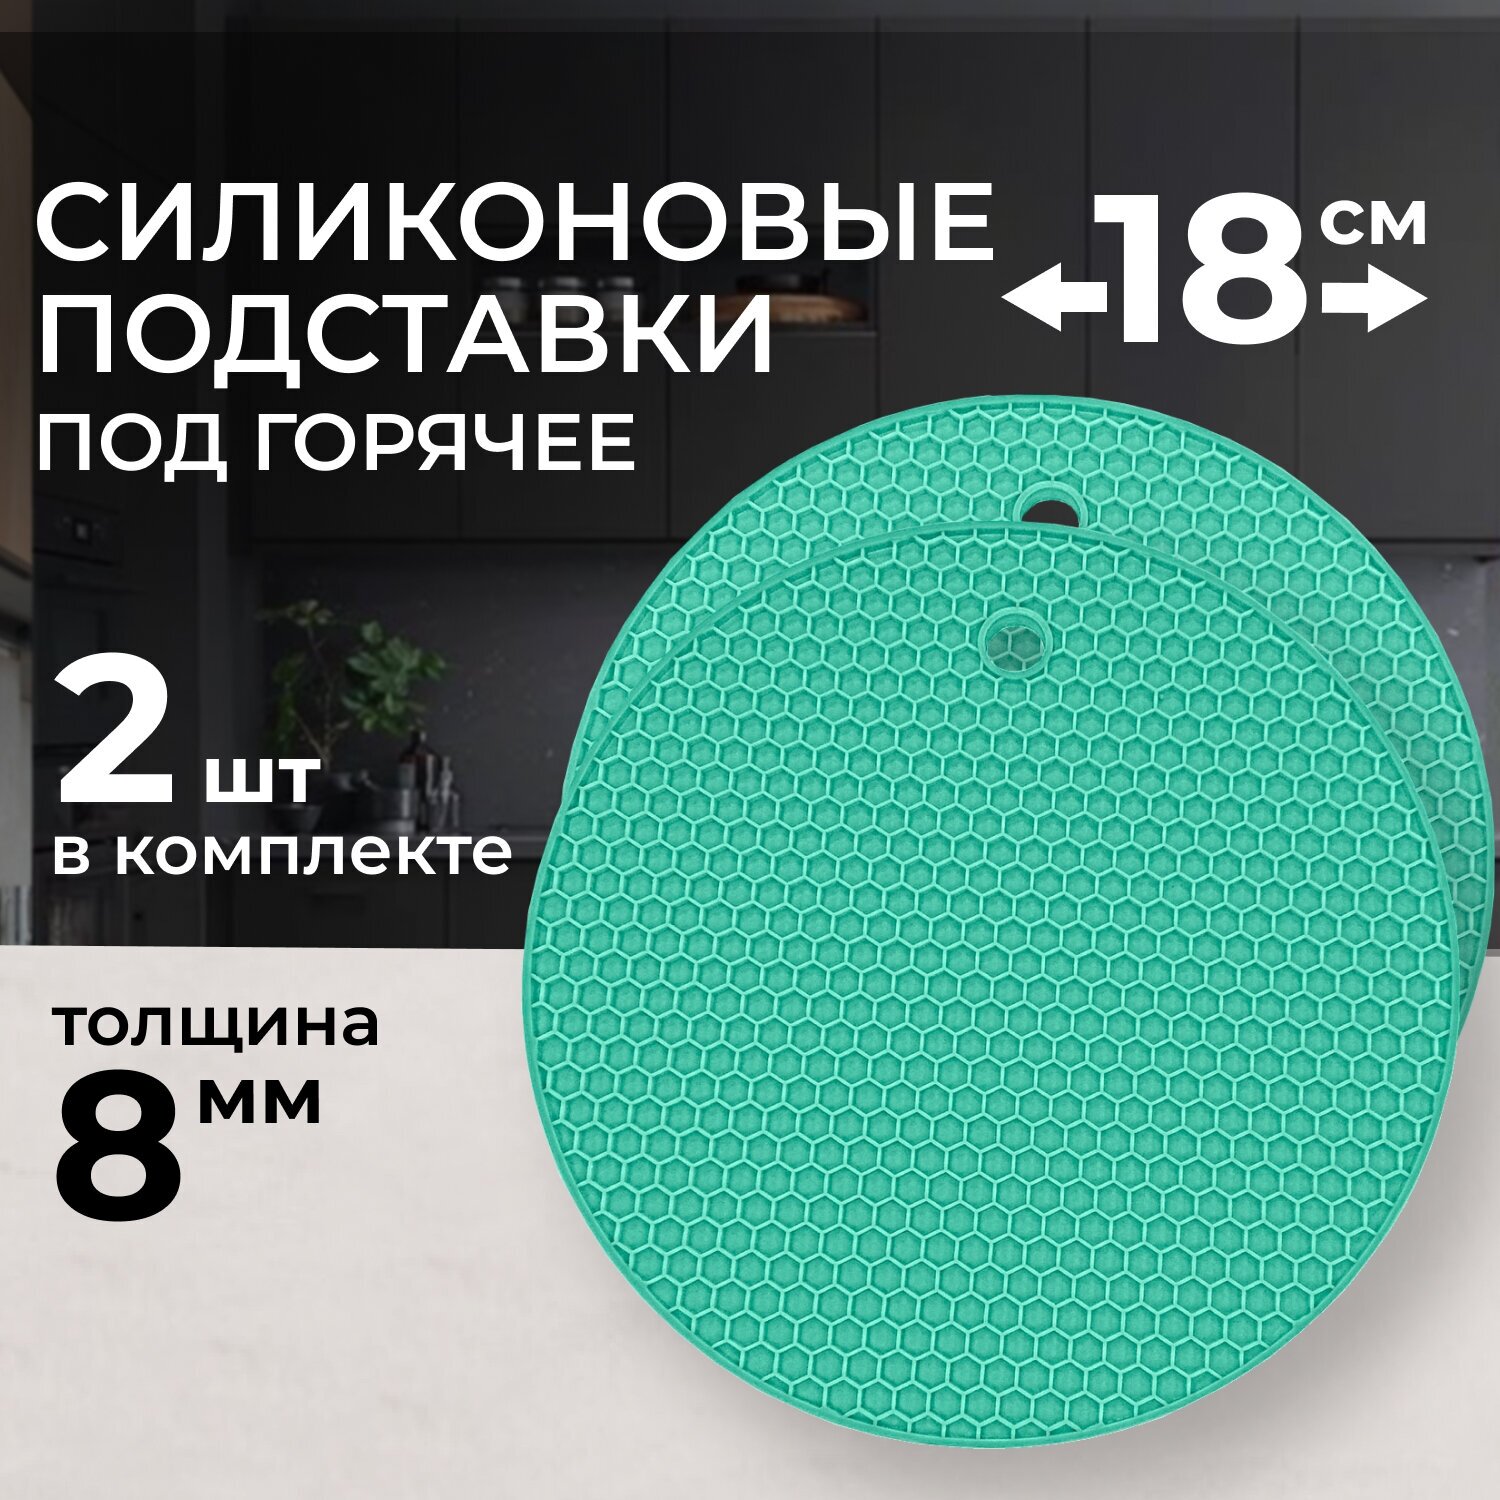 Подставка под горячее силиконовая на стол, круглая, диаметр 18 см, толщина - реальные 0,8 см, термостойкая - до + 230 С, 2 штуки зелёного цвета